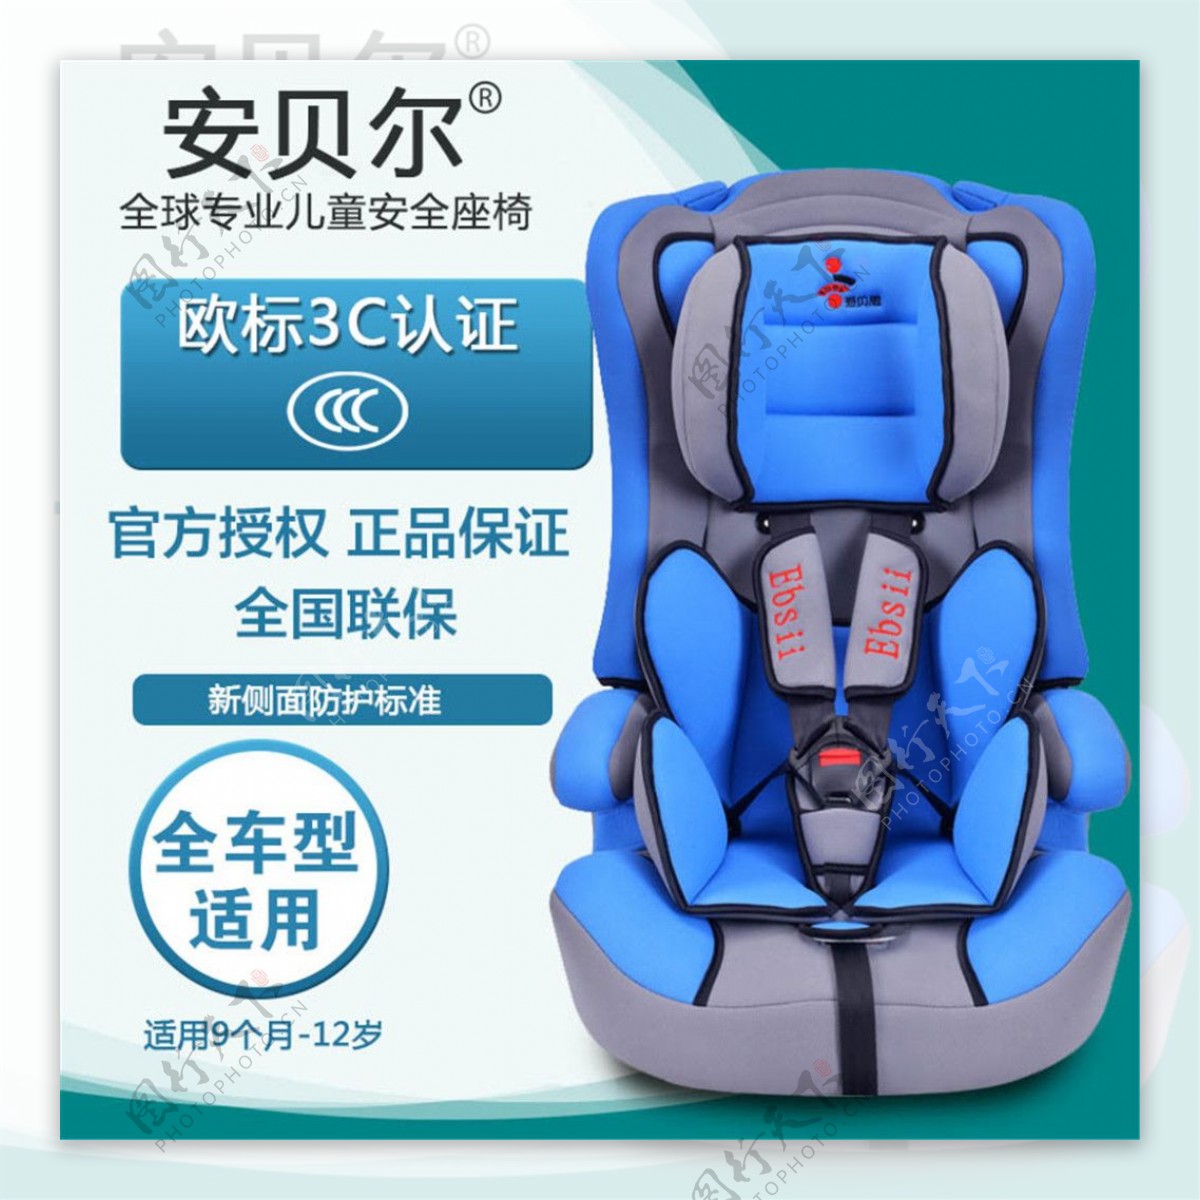 款淘宝婴儿儿童汽车安全座椅直通车主图psd设计素材下载